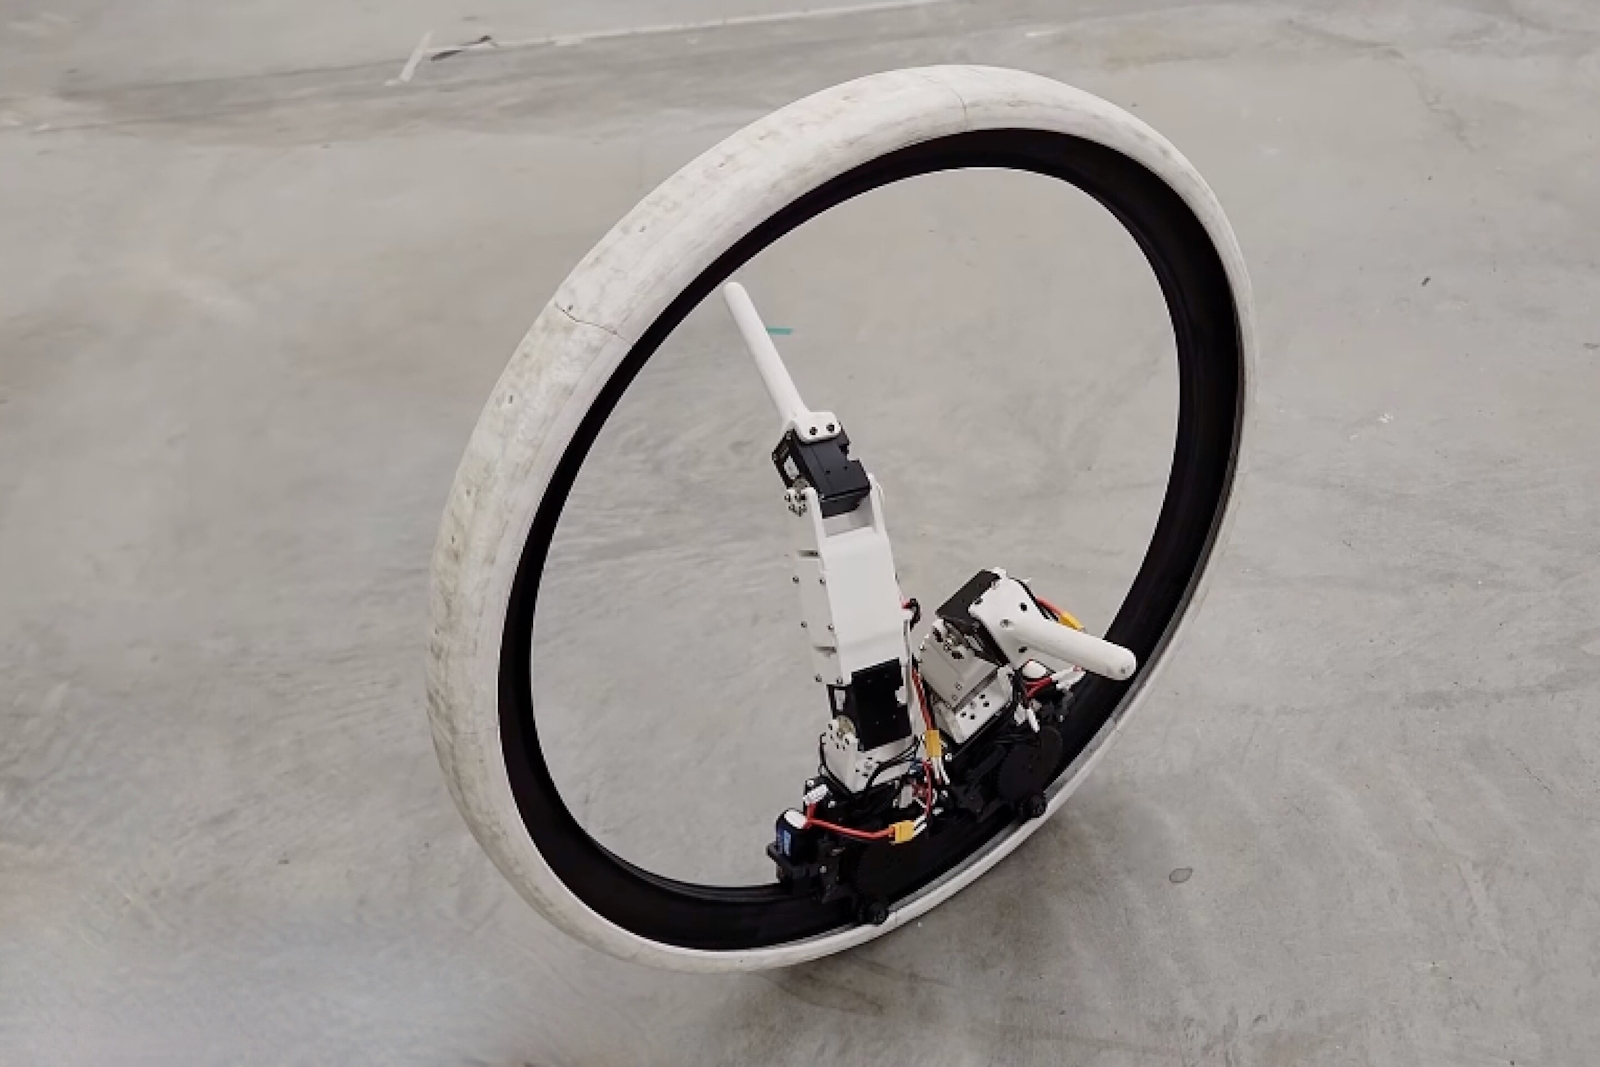 Le robot roue est inspiré de Star Wars. © Université de l'Illinois Urbana-Champaign